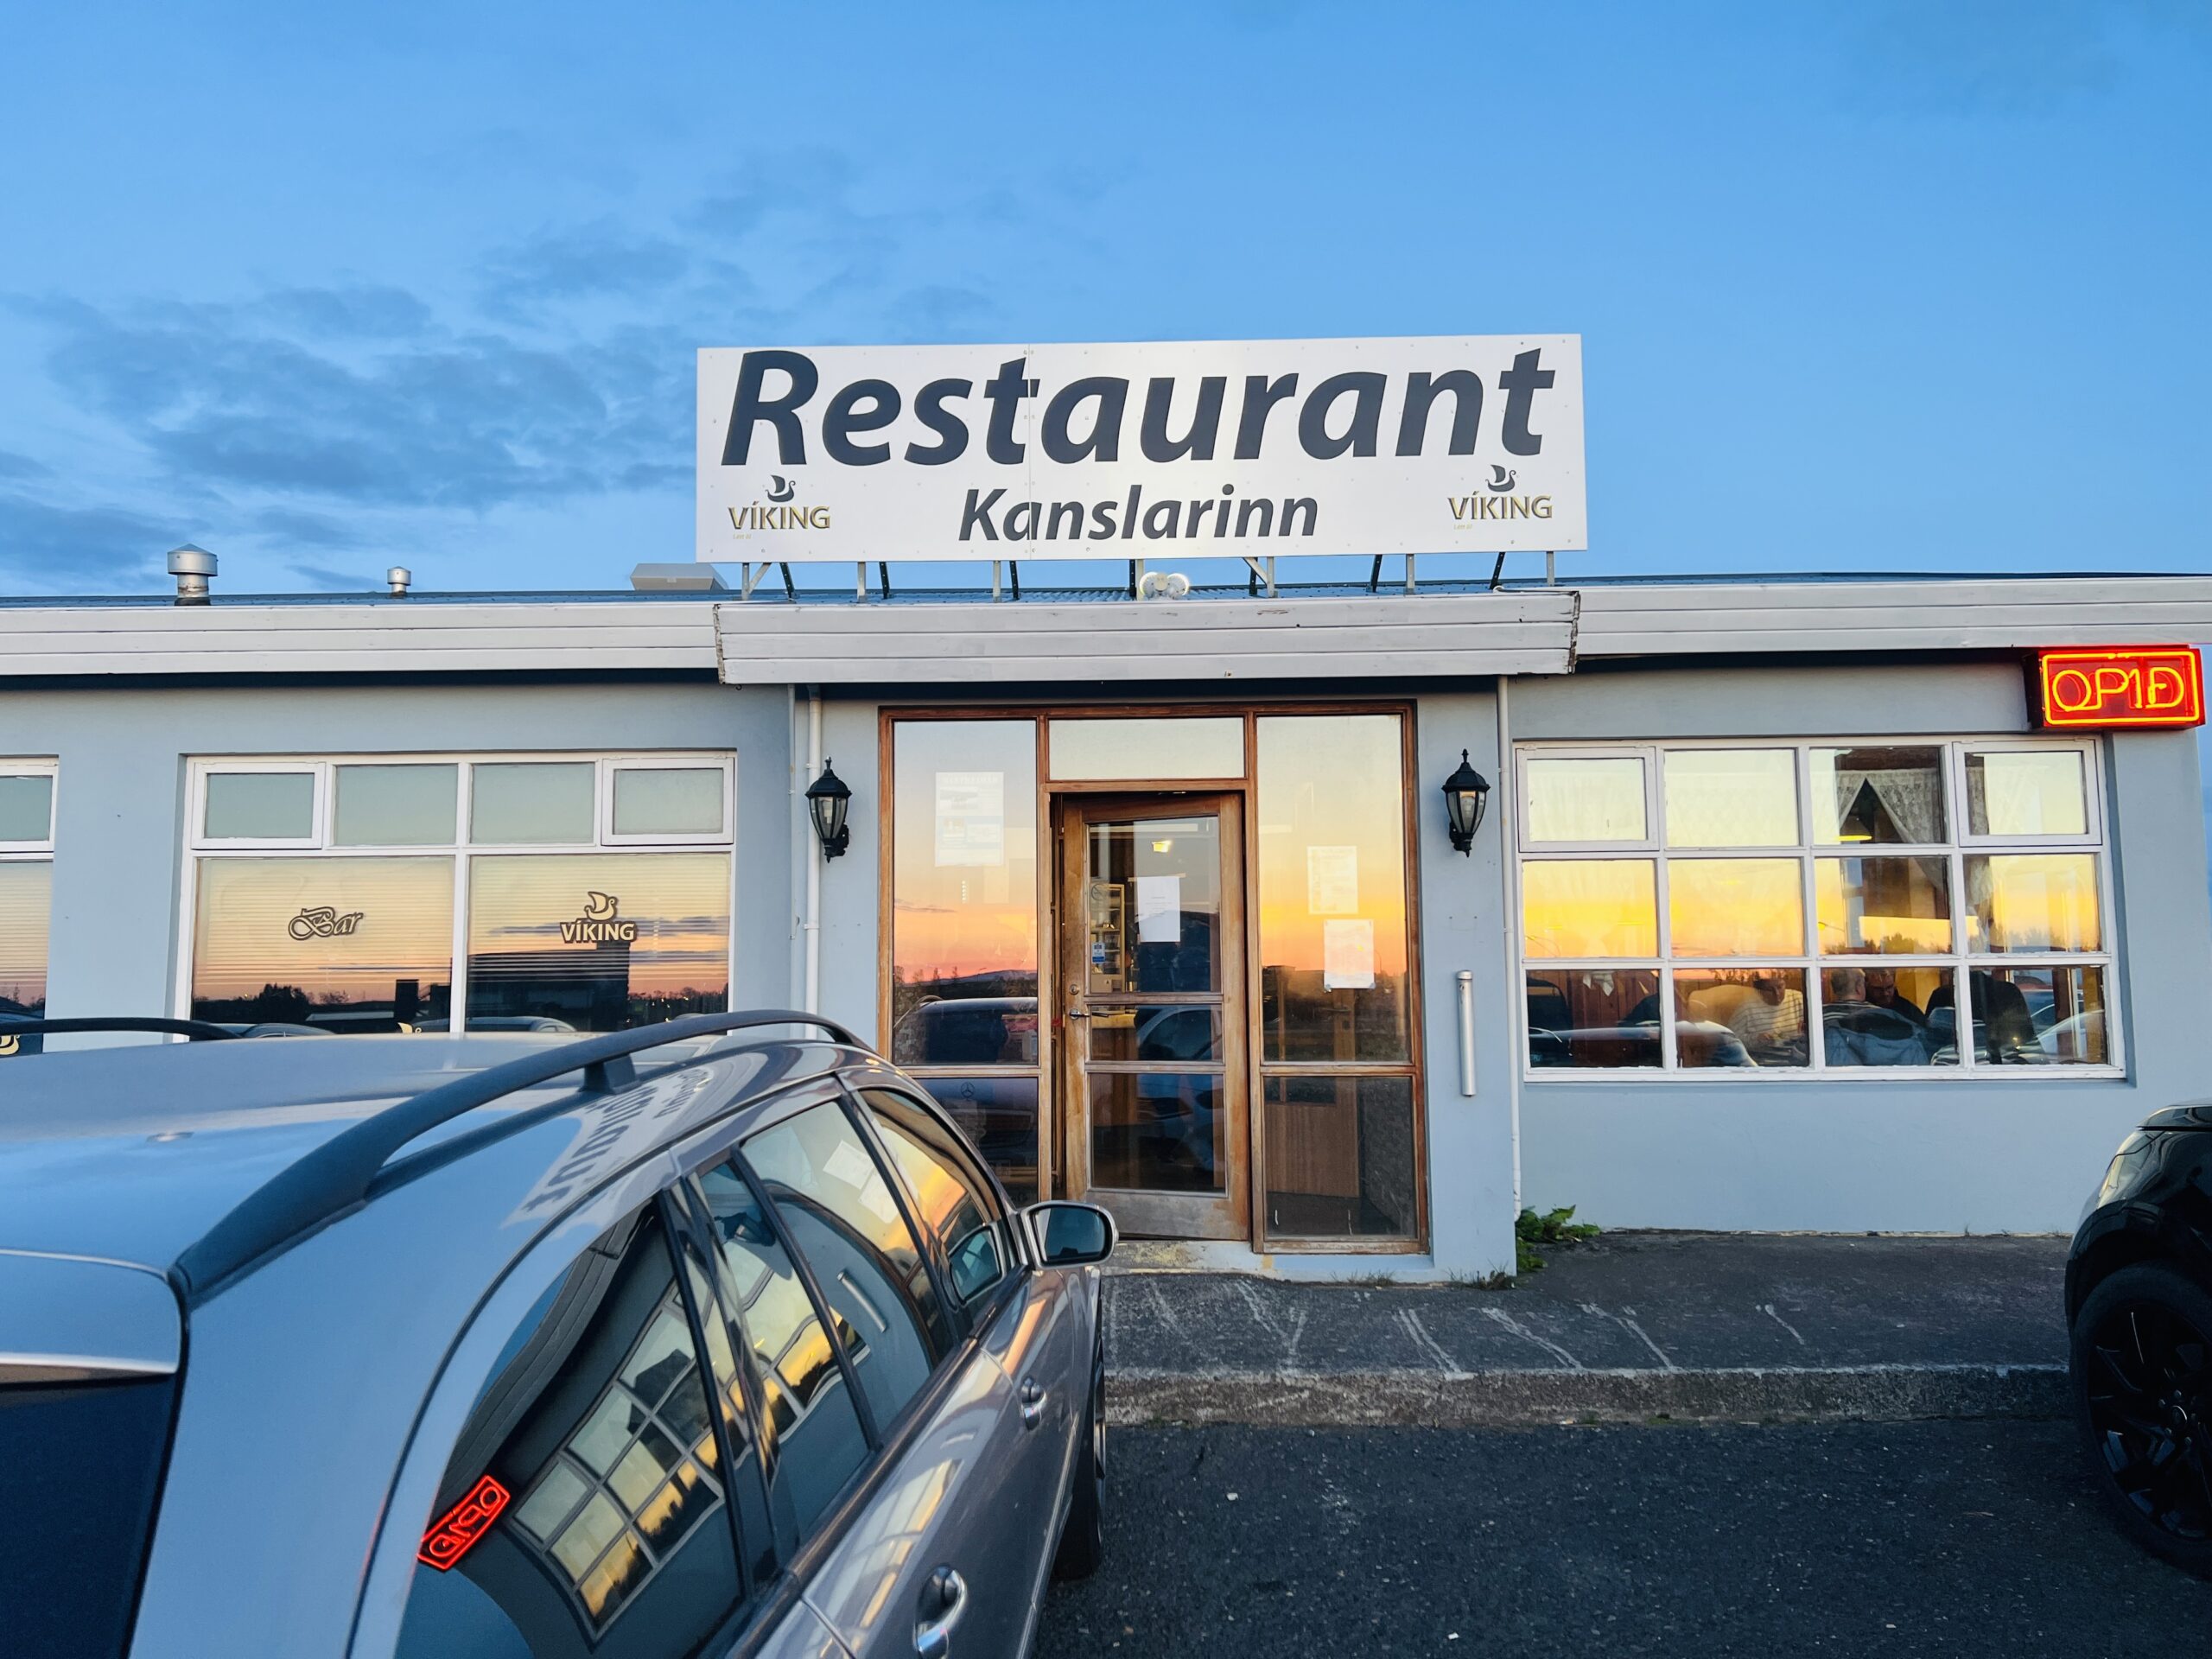 Restaurants in Iceland 冰岛美食 16